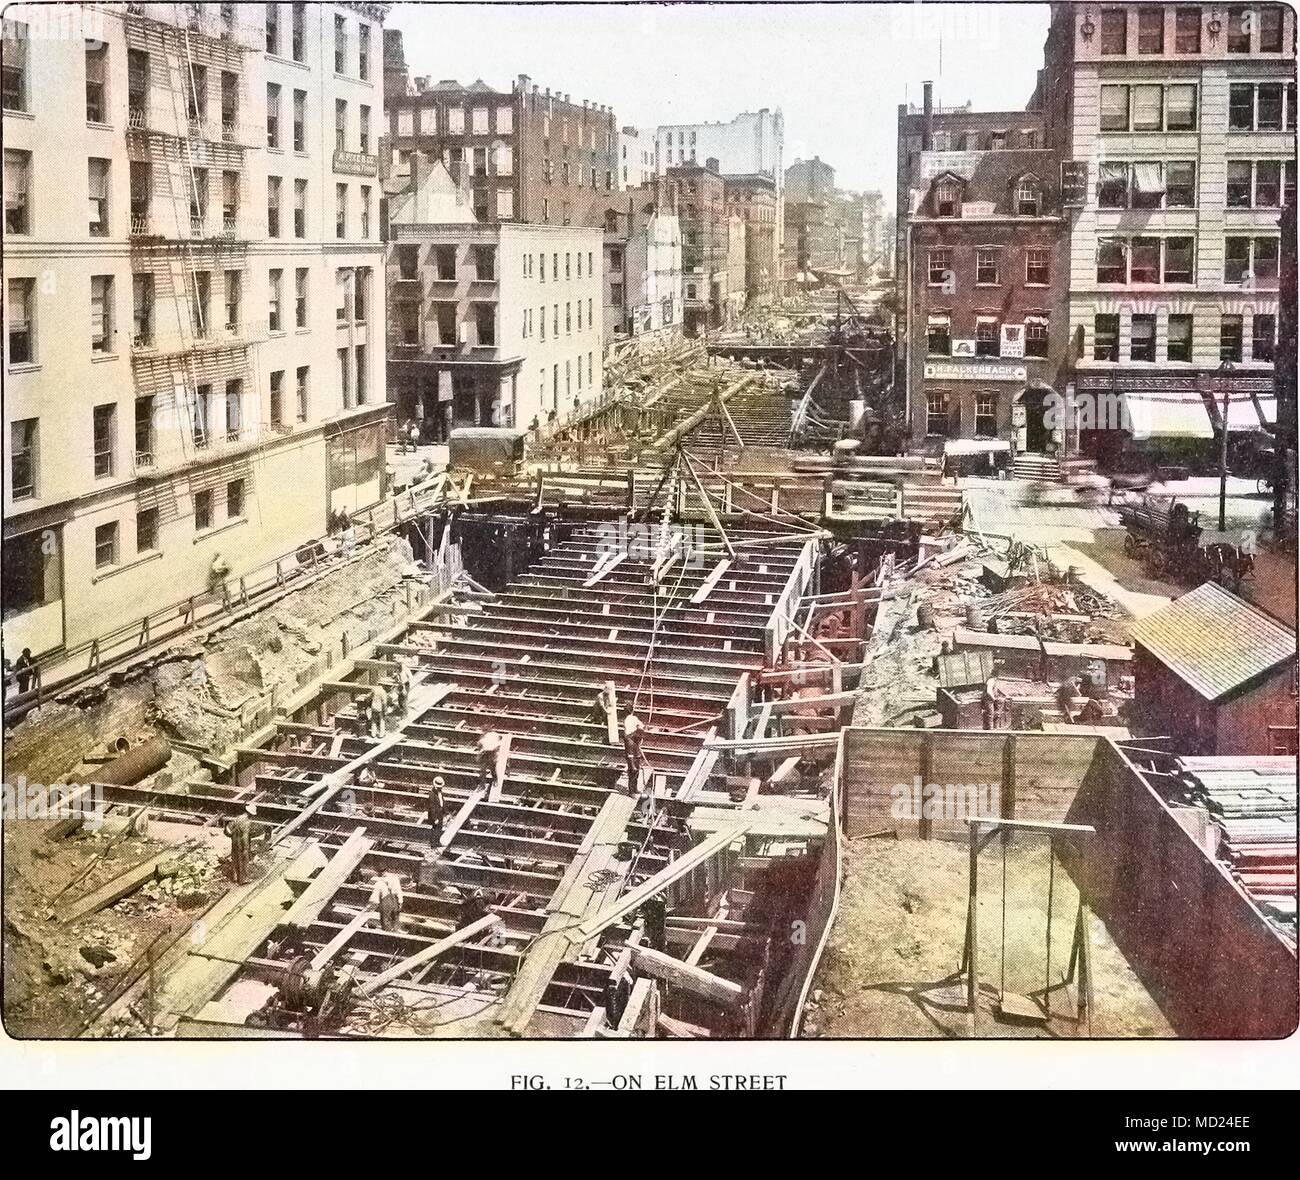 Fotogravur der Bau der ersten U-Bahn in New York Stadt, entlang der Elm Street und Lafayette Place, 1901. Mit freundlicher Genehmigung Internet Archive. Hinweis: Das Bild hat digital über ein modernes Prozess eingefärbt worden. Farben möglicherweise nicht sein - genau. () Stockfoto